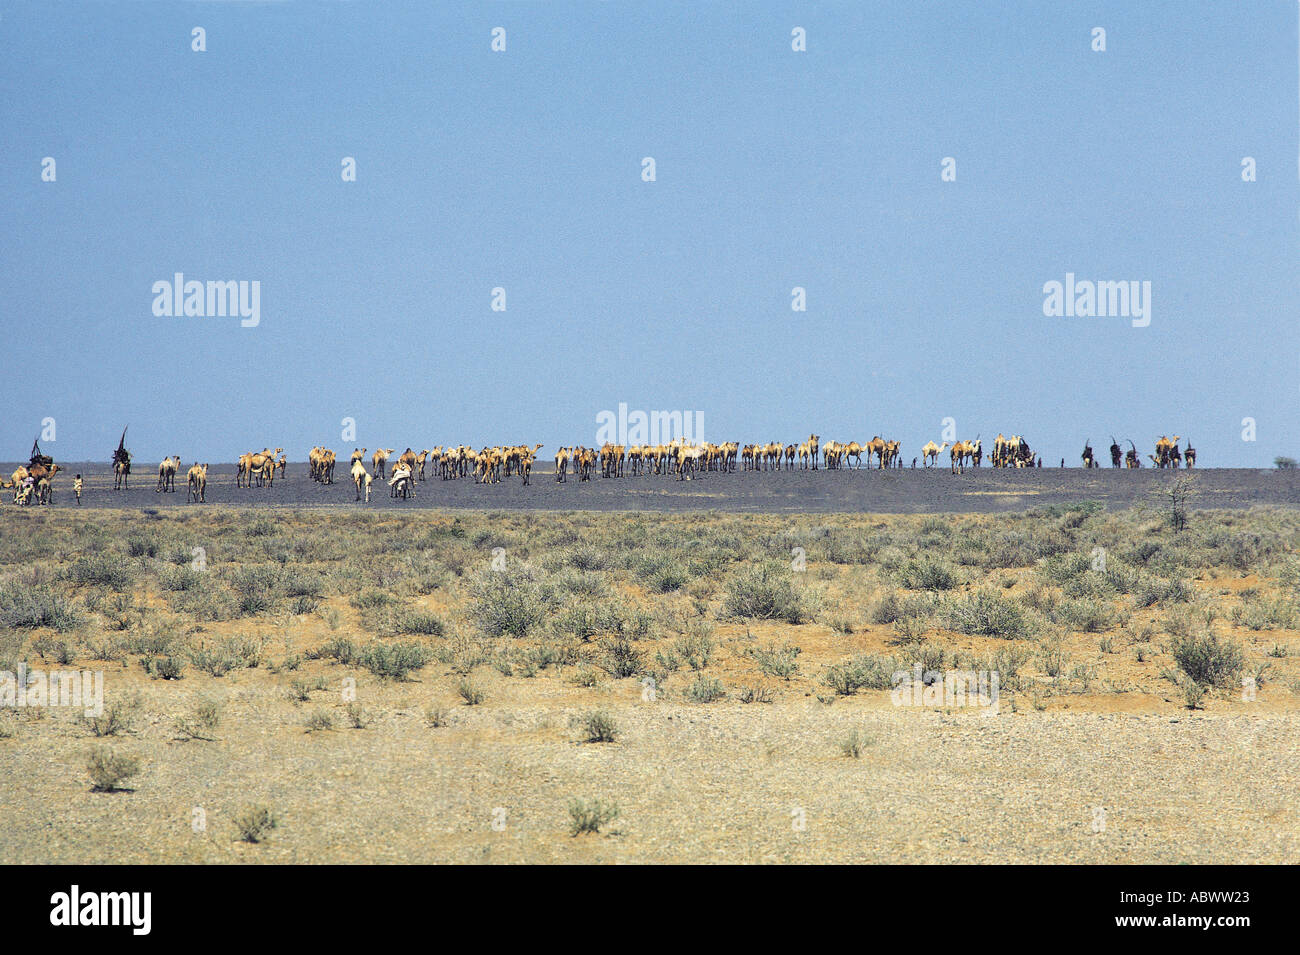 Gabbra les gens avec leurs chameaux au cours de la migration. Banque D'Images